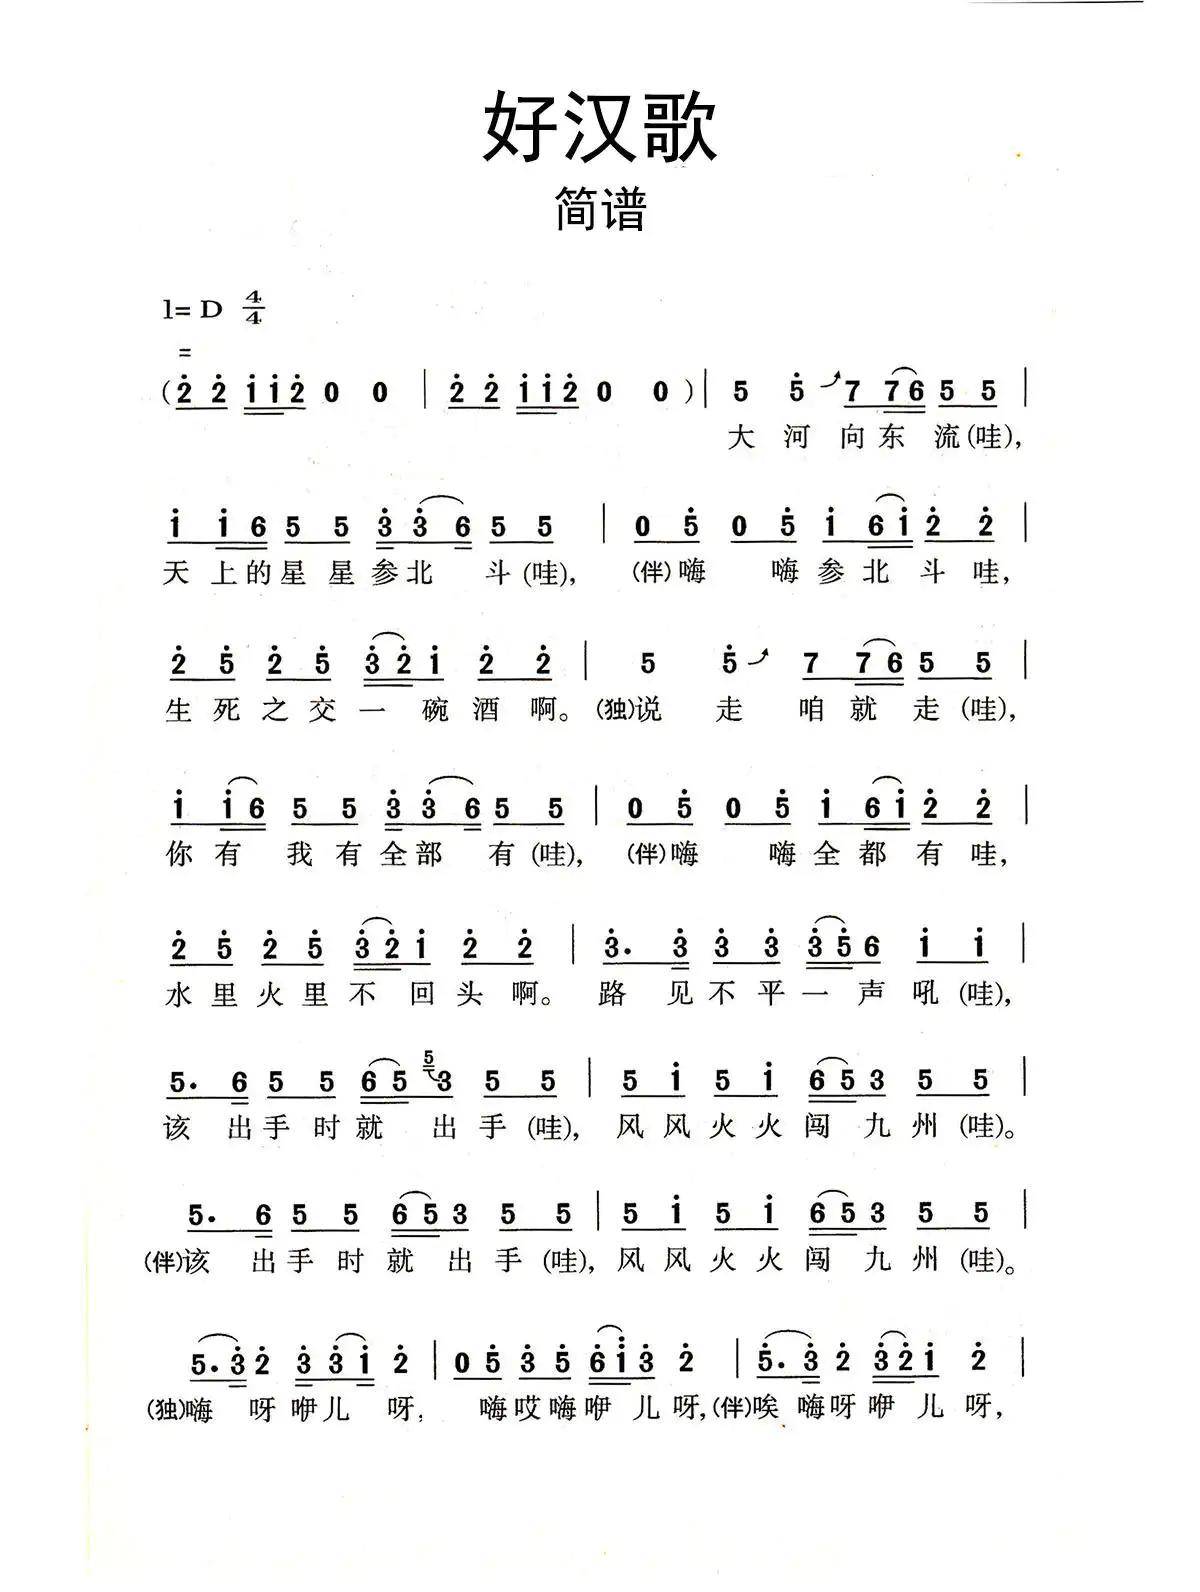 好汉歌-水浒传主题曲-钢琴谱文件（五线谱、双手简谱、数字谱、Midi、PDF）免费下载